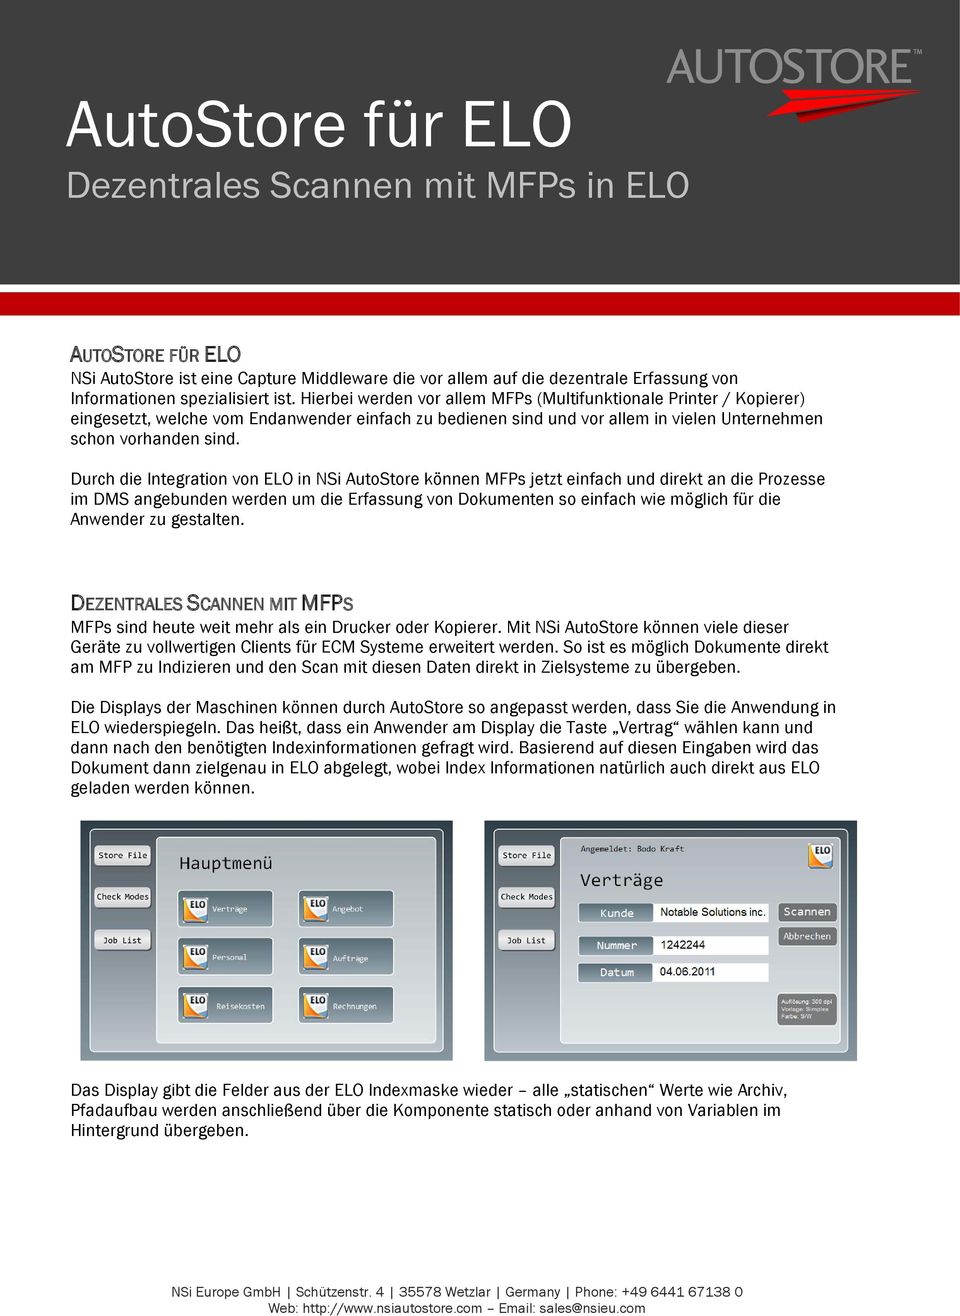 Durch die Integration von ELO in NSi AutoStore können MFPs jetzt einfach und direkt an die Prozesse im DMS angebunden werden um die Erfassung von Dokumenten so einfach wie möglich für die Anwender zu